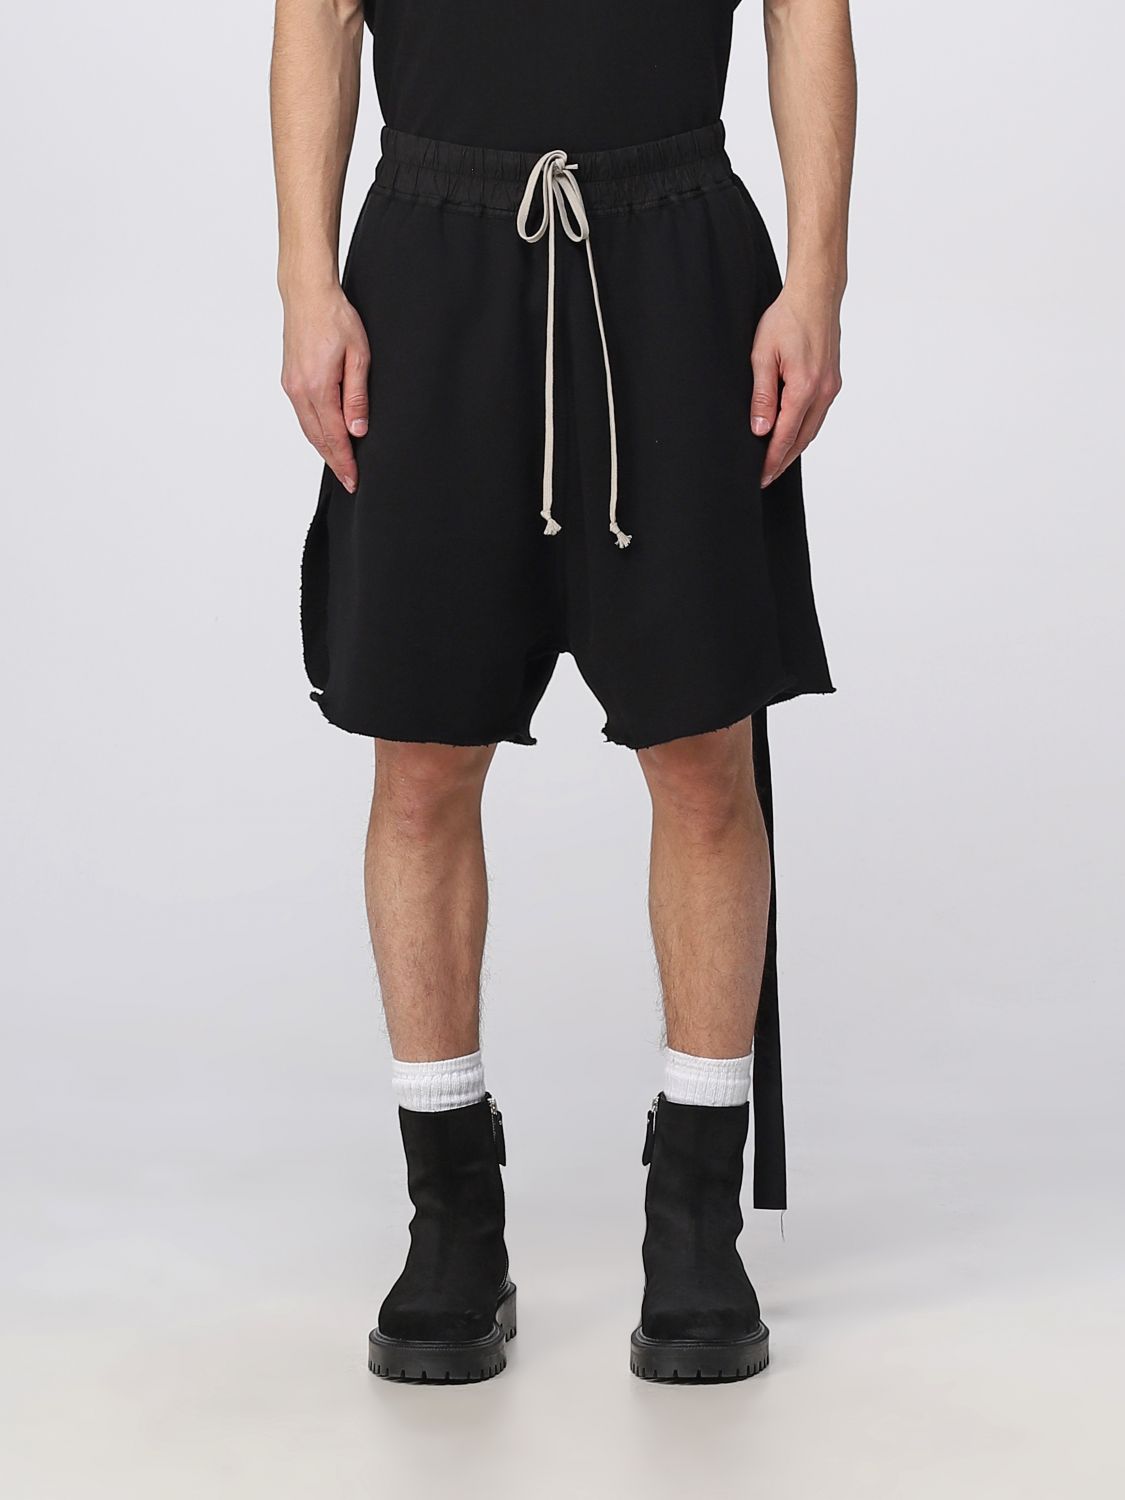 10,500円RICK OWENS DRKSHDW Pods shorts Sサイズ